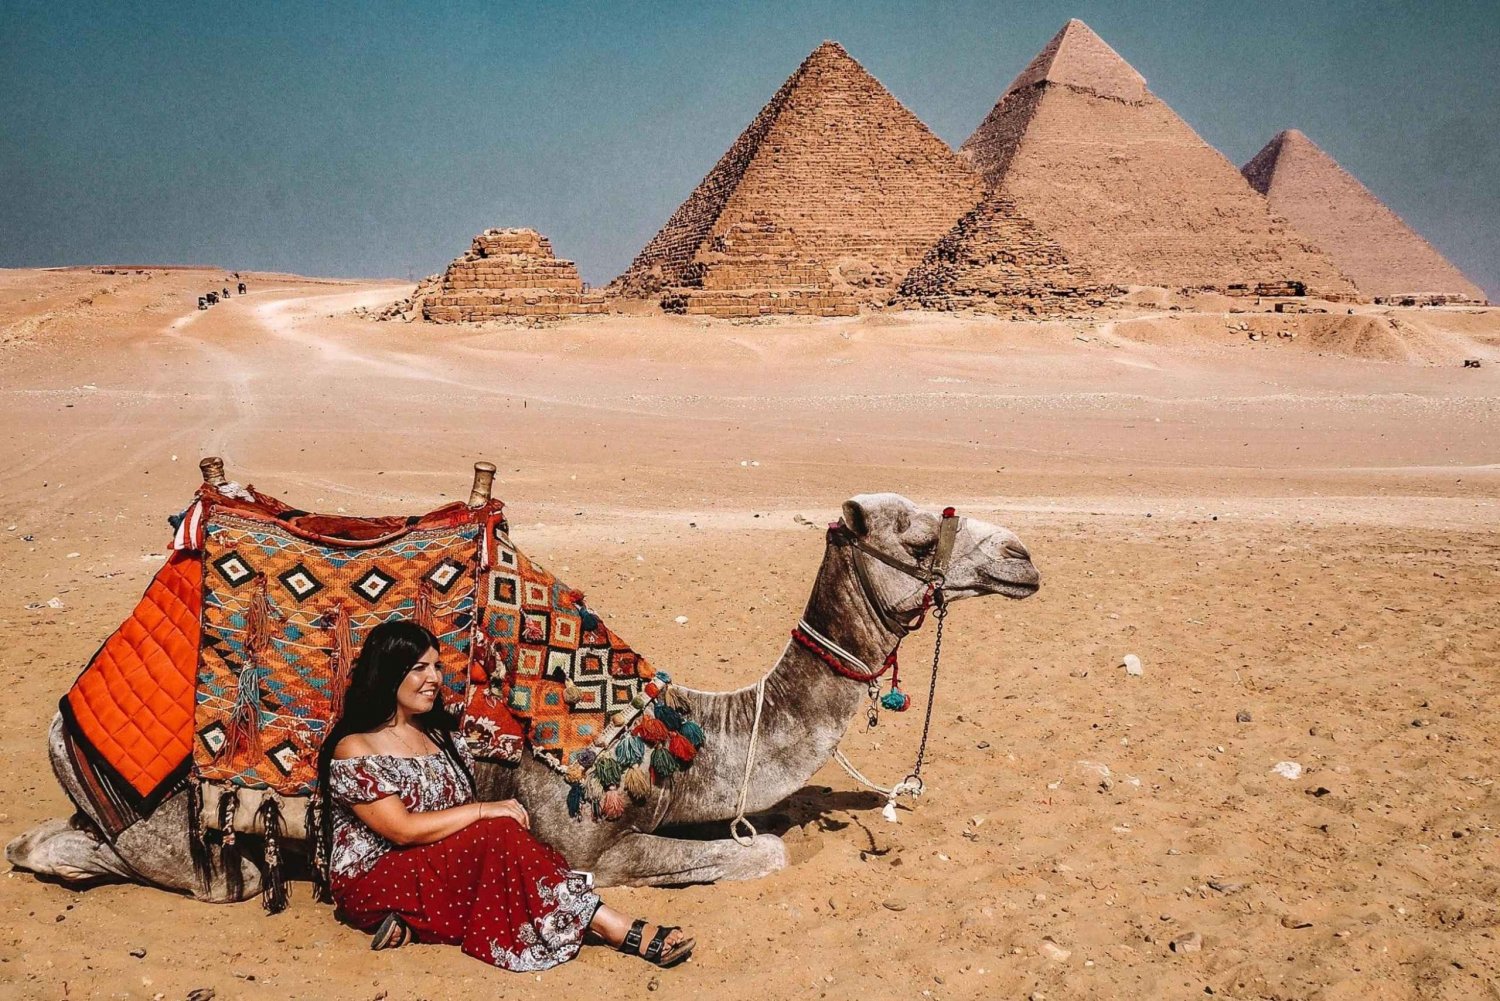 Kairo: Dagsutflykt till pyramiderna i Giza, Memphis och Sakkara